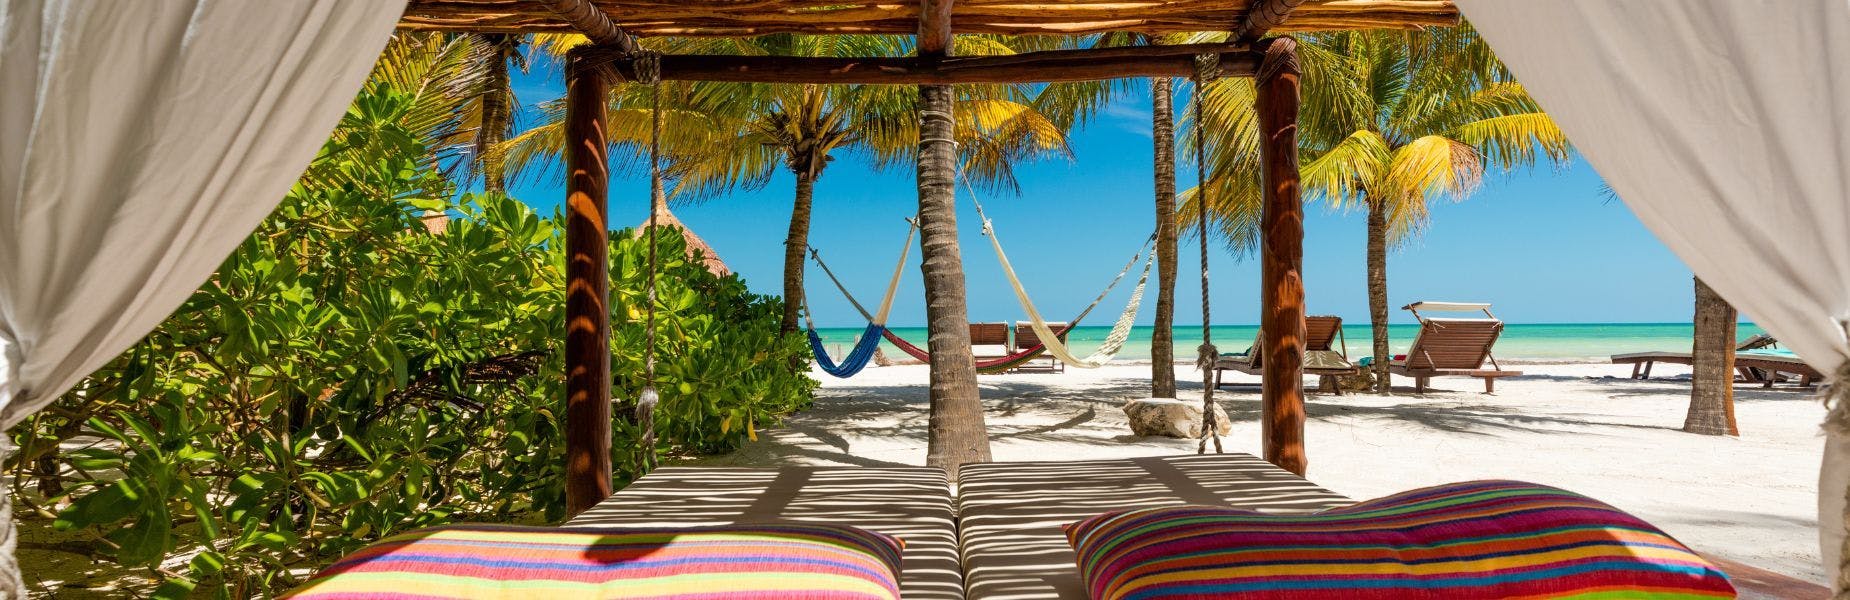 ligbedjes en hangmatten op een strand in Mexico